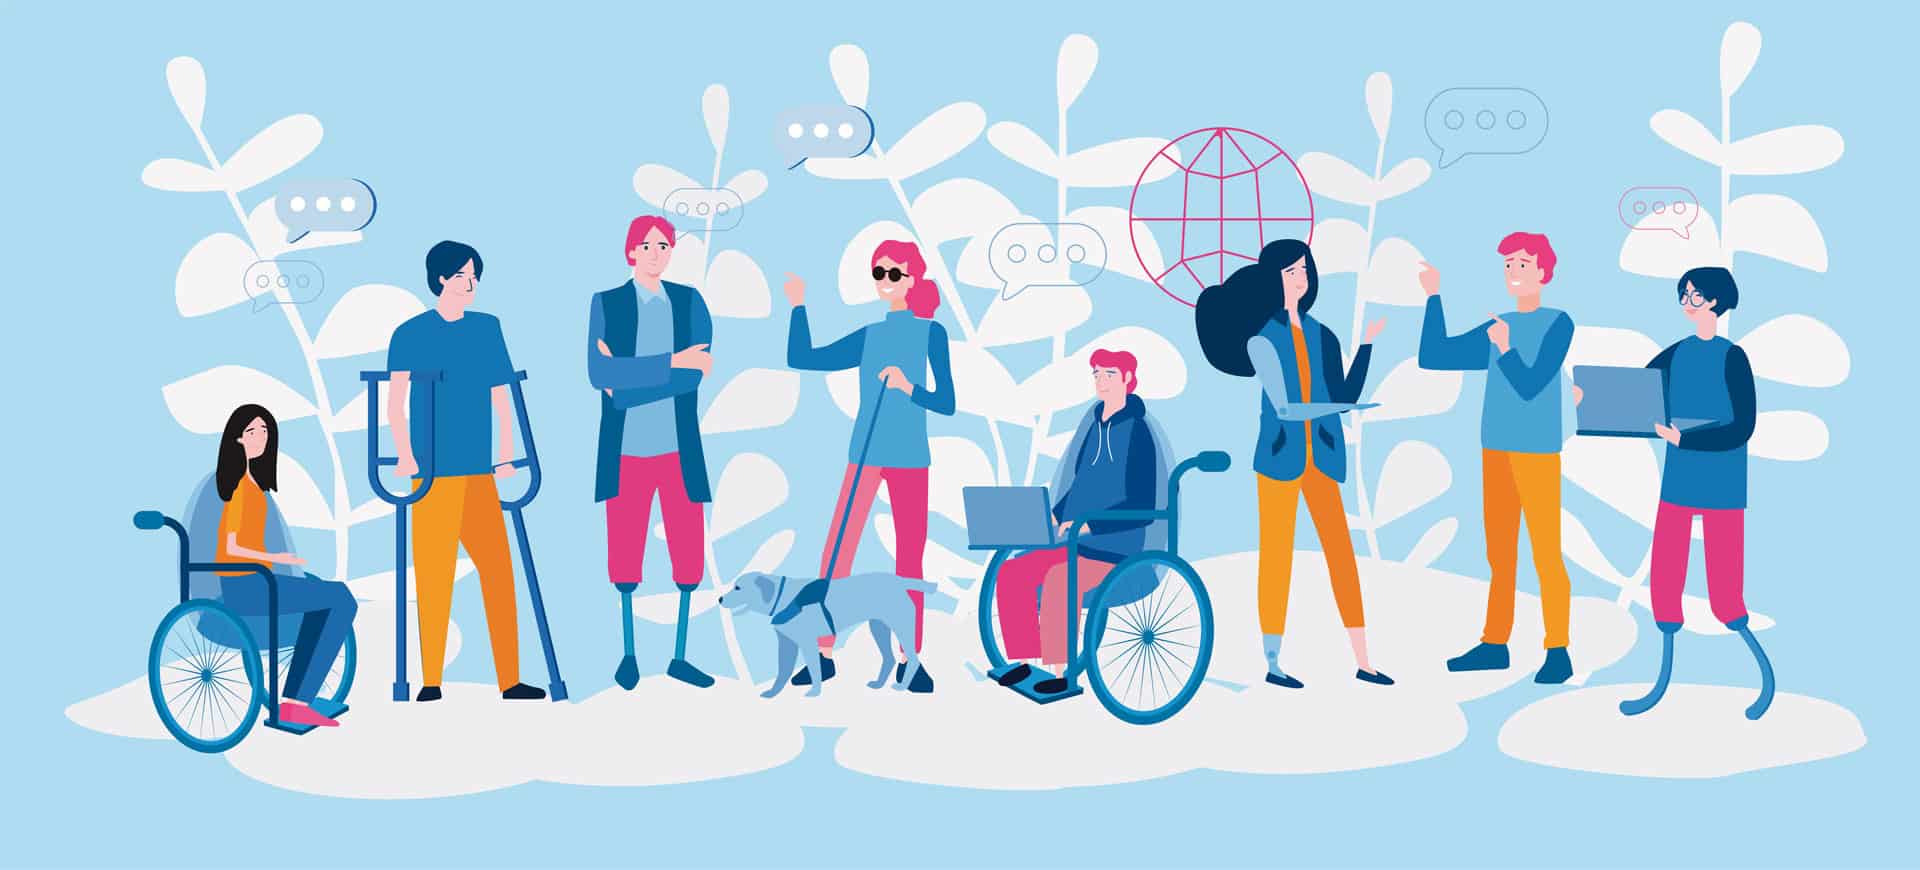 Illustration von einer inklusiven Gruppe an Menschen, manche im Rollstuhl, andere mit Sehbehinderung